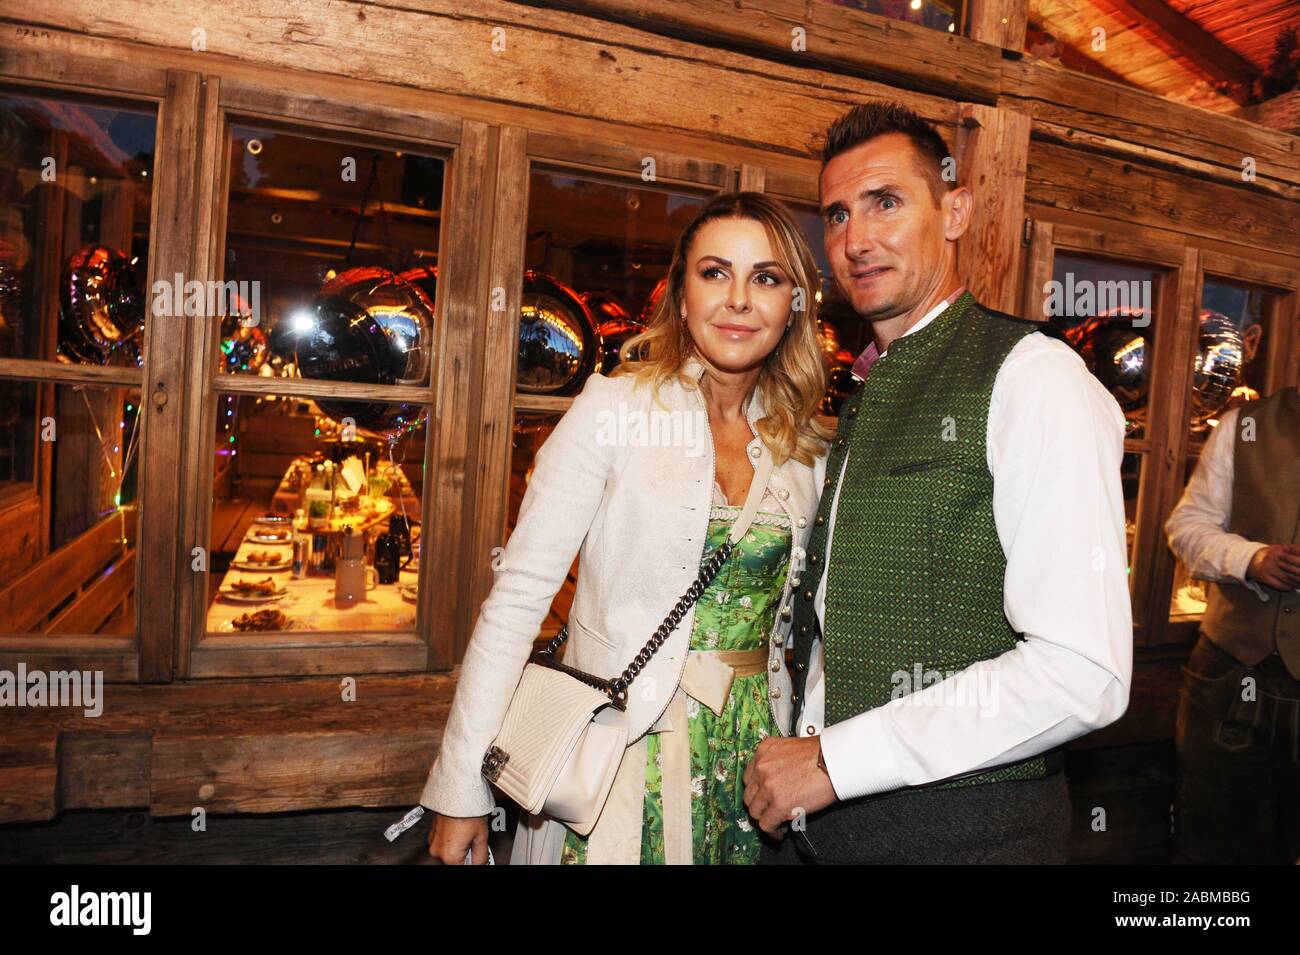 Miroslav Klose con esposa Sylwia al Wiesn-Almauftrieb tradicional en el Käfer marquesina. [Traducción automática] Foto de stock